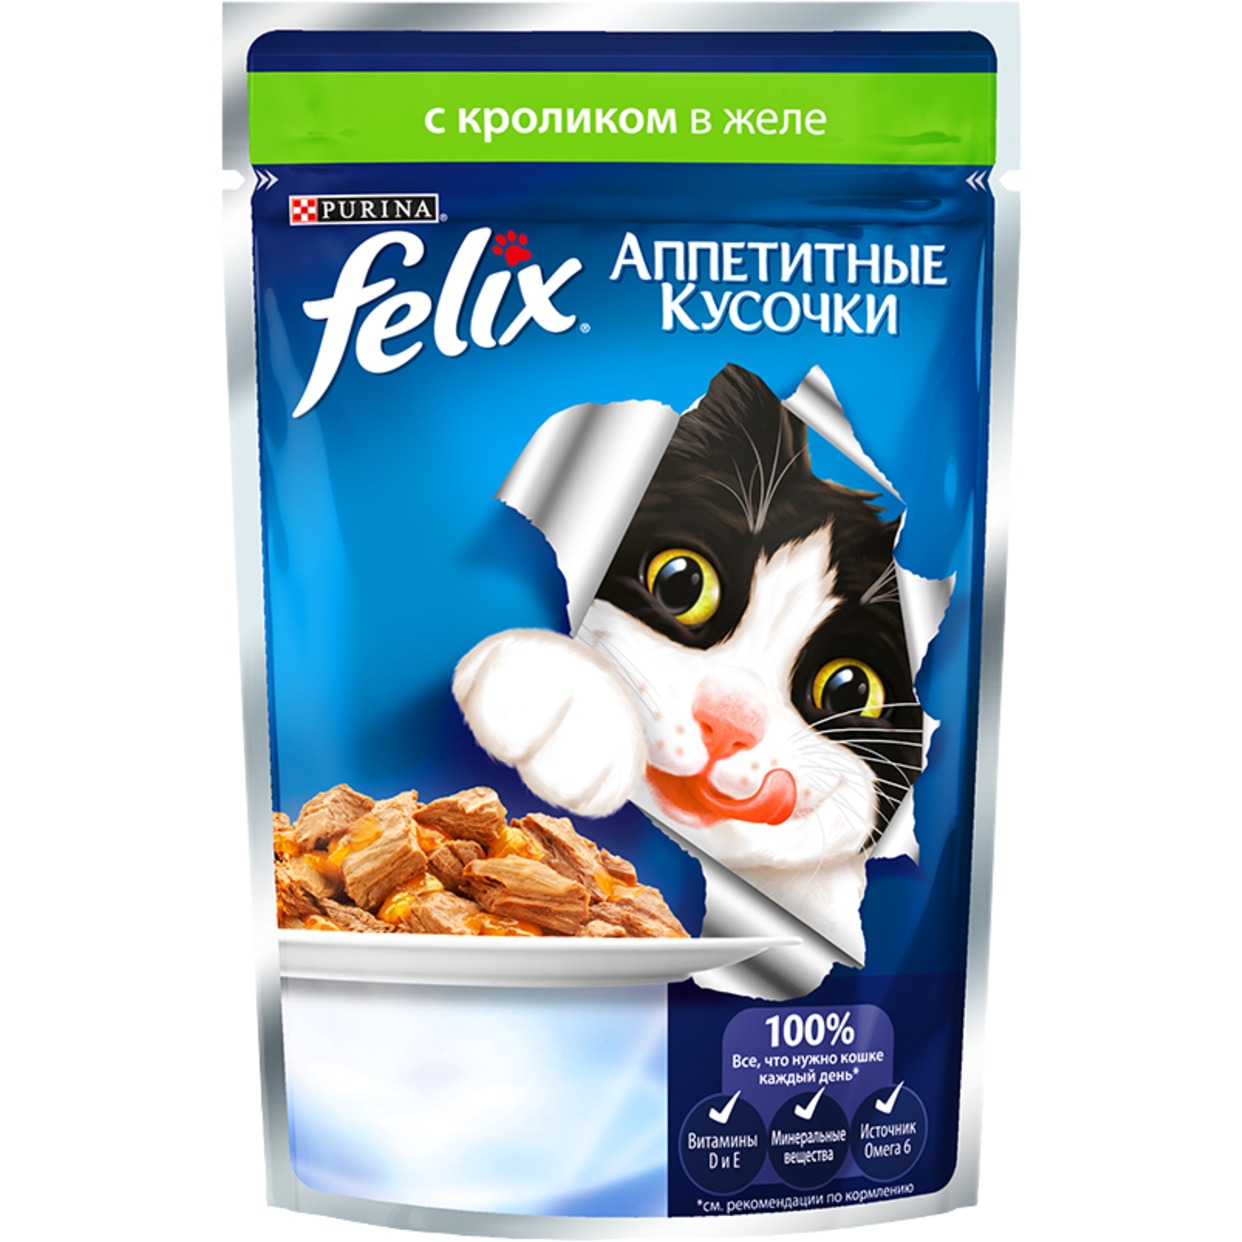 Корм для взрослых кошек Felix аппетитные кусочки в желе с кроликом 85 г по акции в Пятерочке